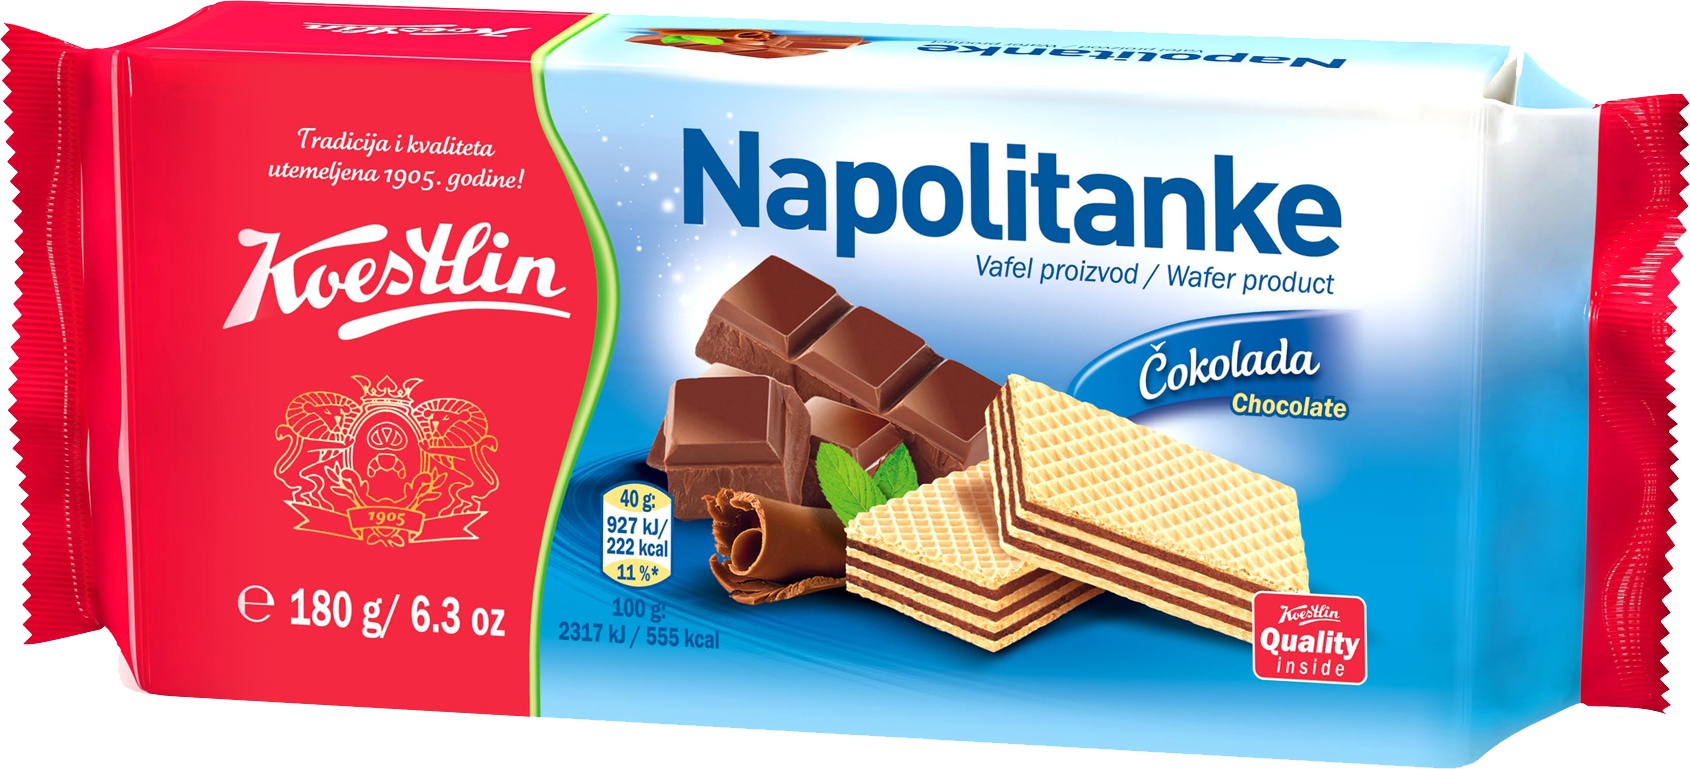 Slika za Napolitanke Koestlin čokolada 180g